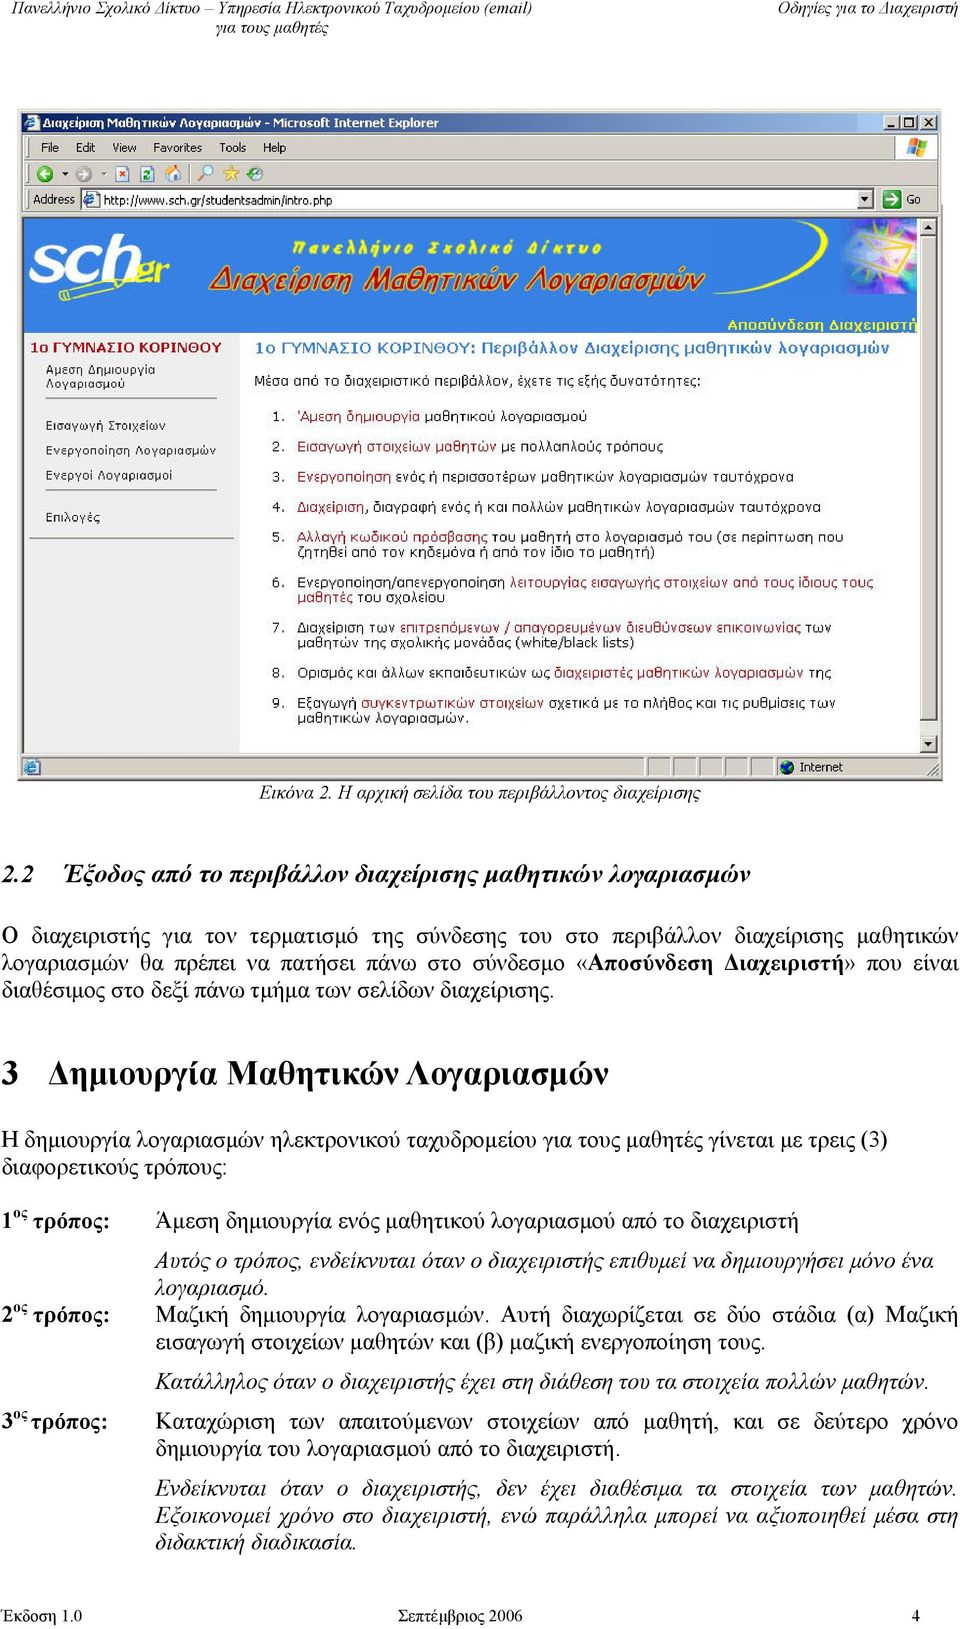 «Αποσύνδεση Διαχειριστή» που είναι διαθέσιμος στο δεξί πάνω τμήμα των σελίδων διαχείρισης.